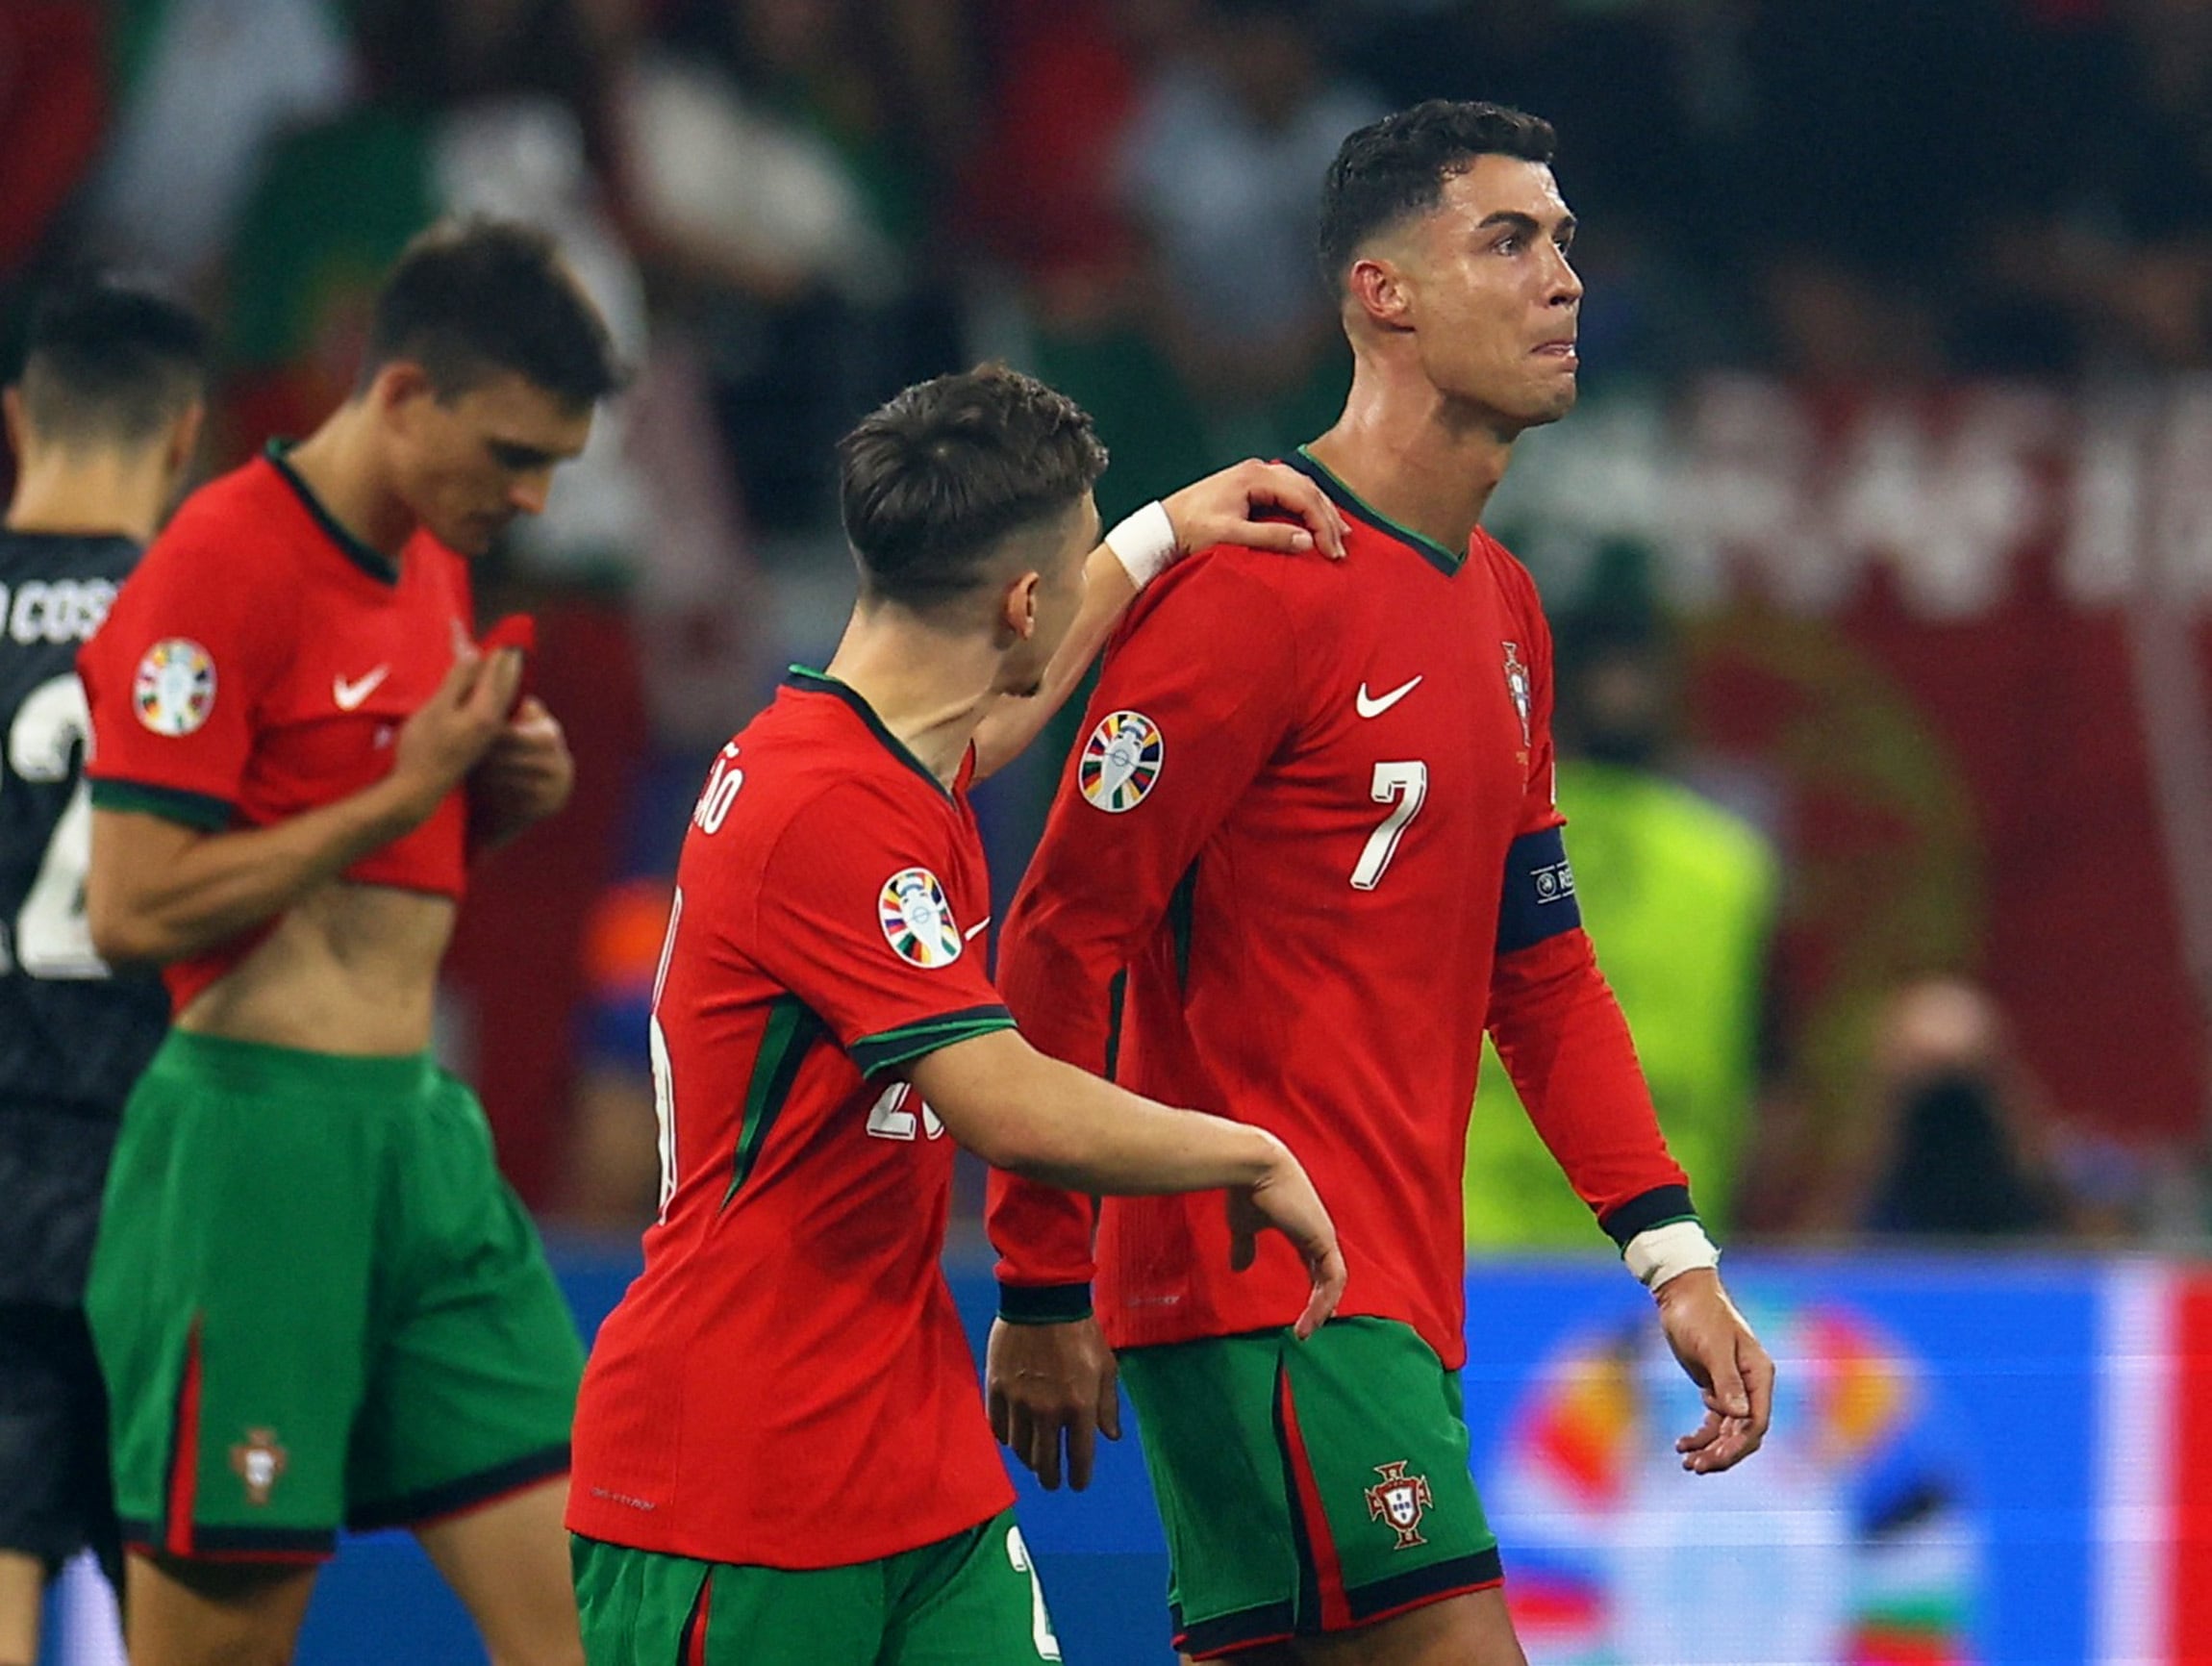 Francisco Conceicao trata de consolar a Cristiano Ronaldo, que no pudo reprimir el llanto (REUTERS/Lee Smith)